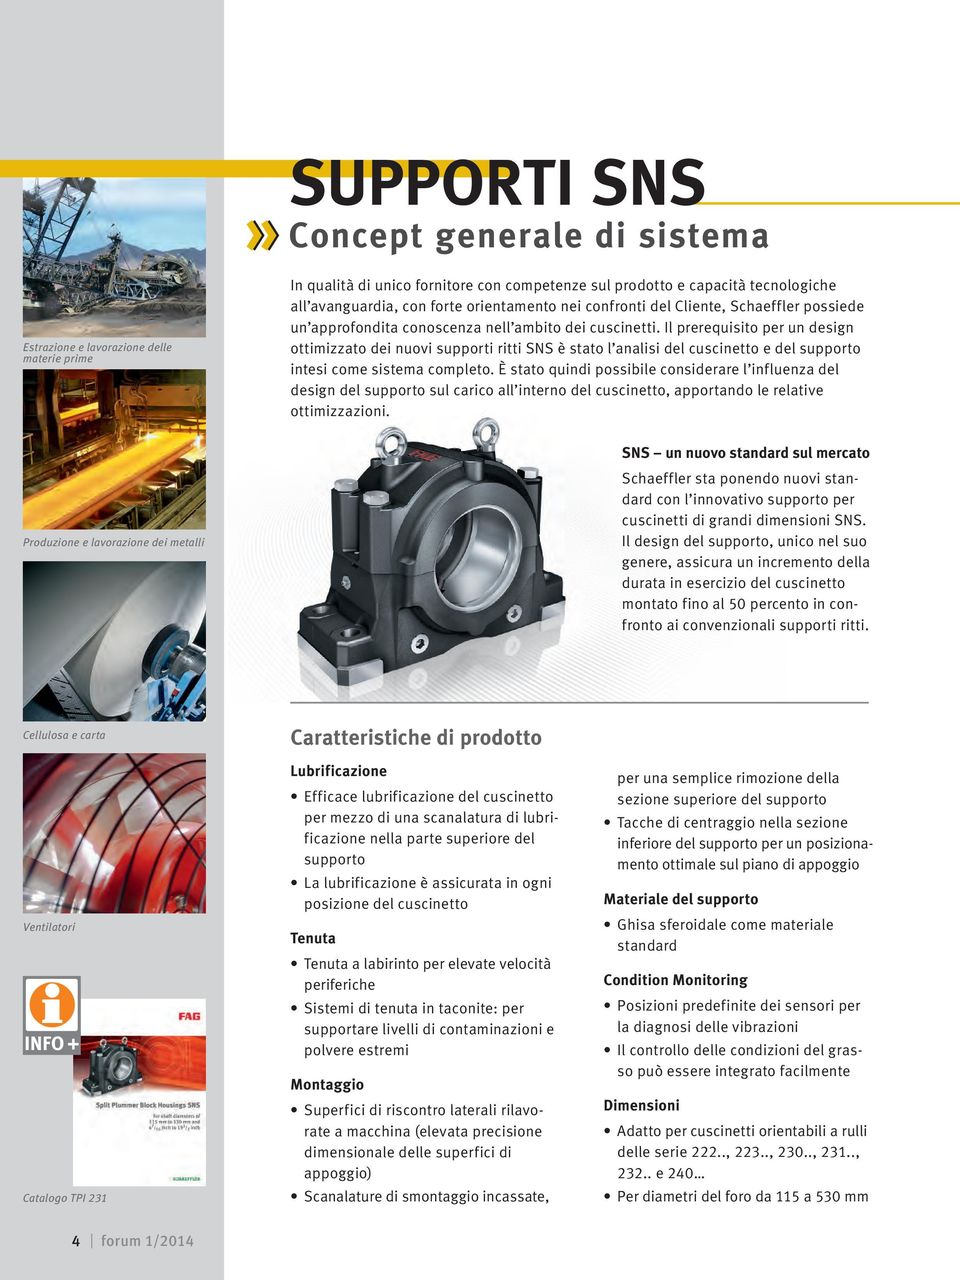 Il prerequisito per un design ottimizzato dei nuovi supporti ritti SNS è stato l analisi del cuscinetto e del supporto intesi come sistema completo.